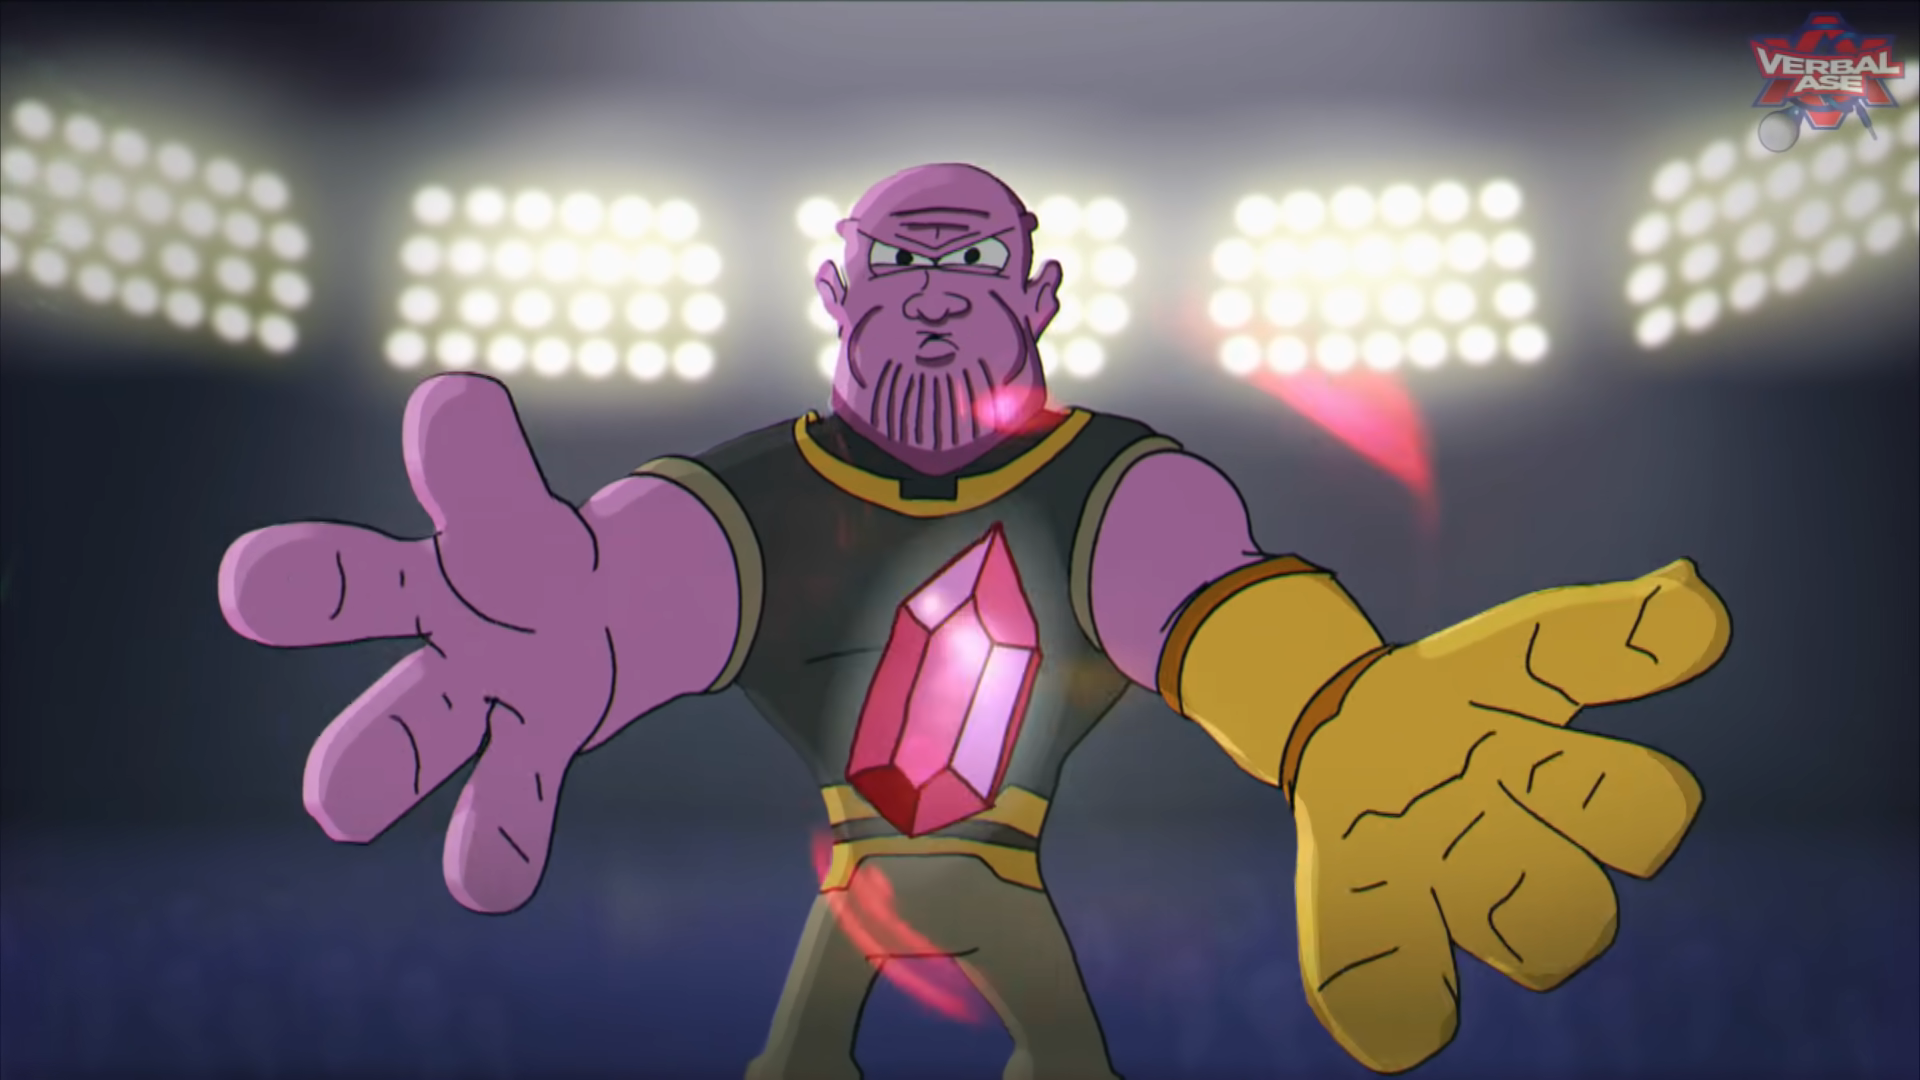 Thanos Beatbox / Cartoon Beatbox Battles.